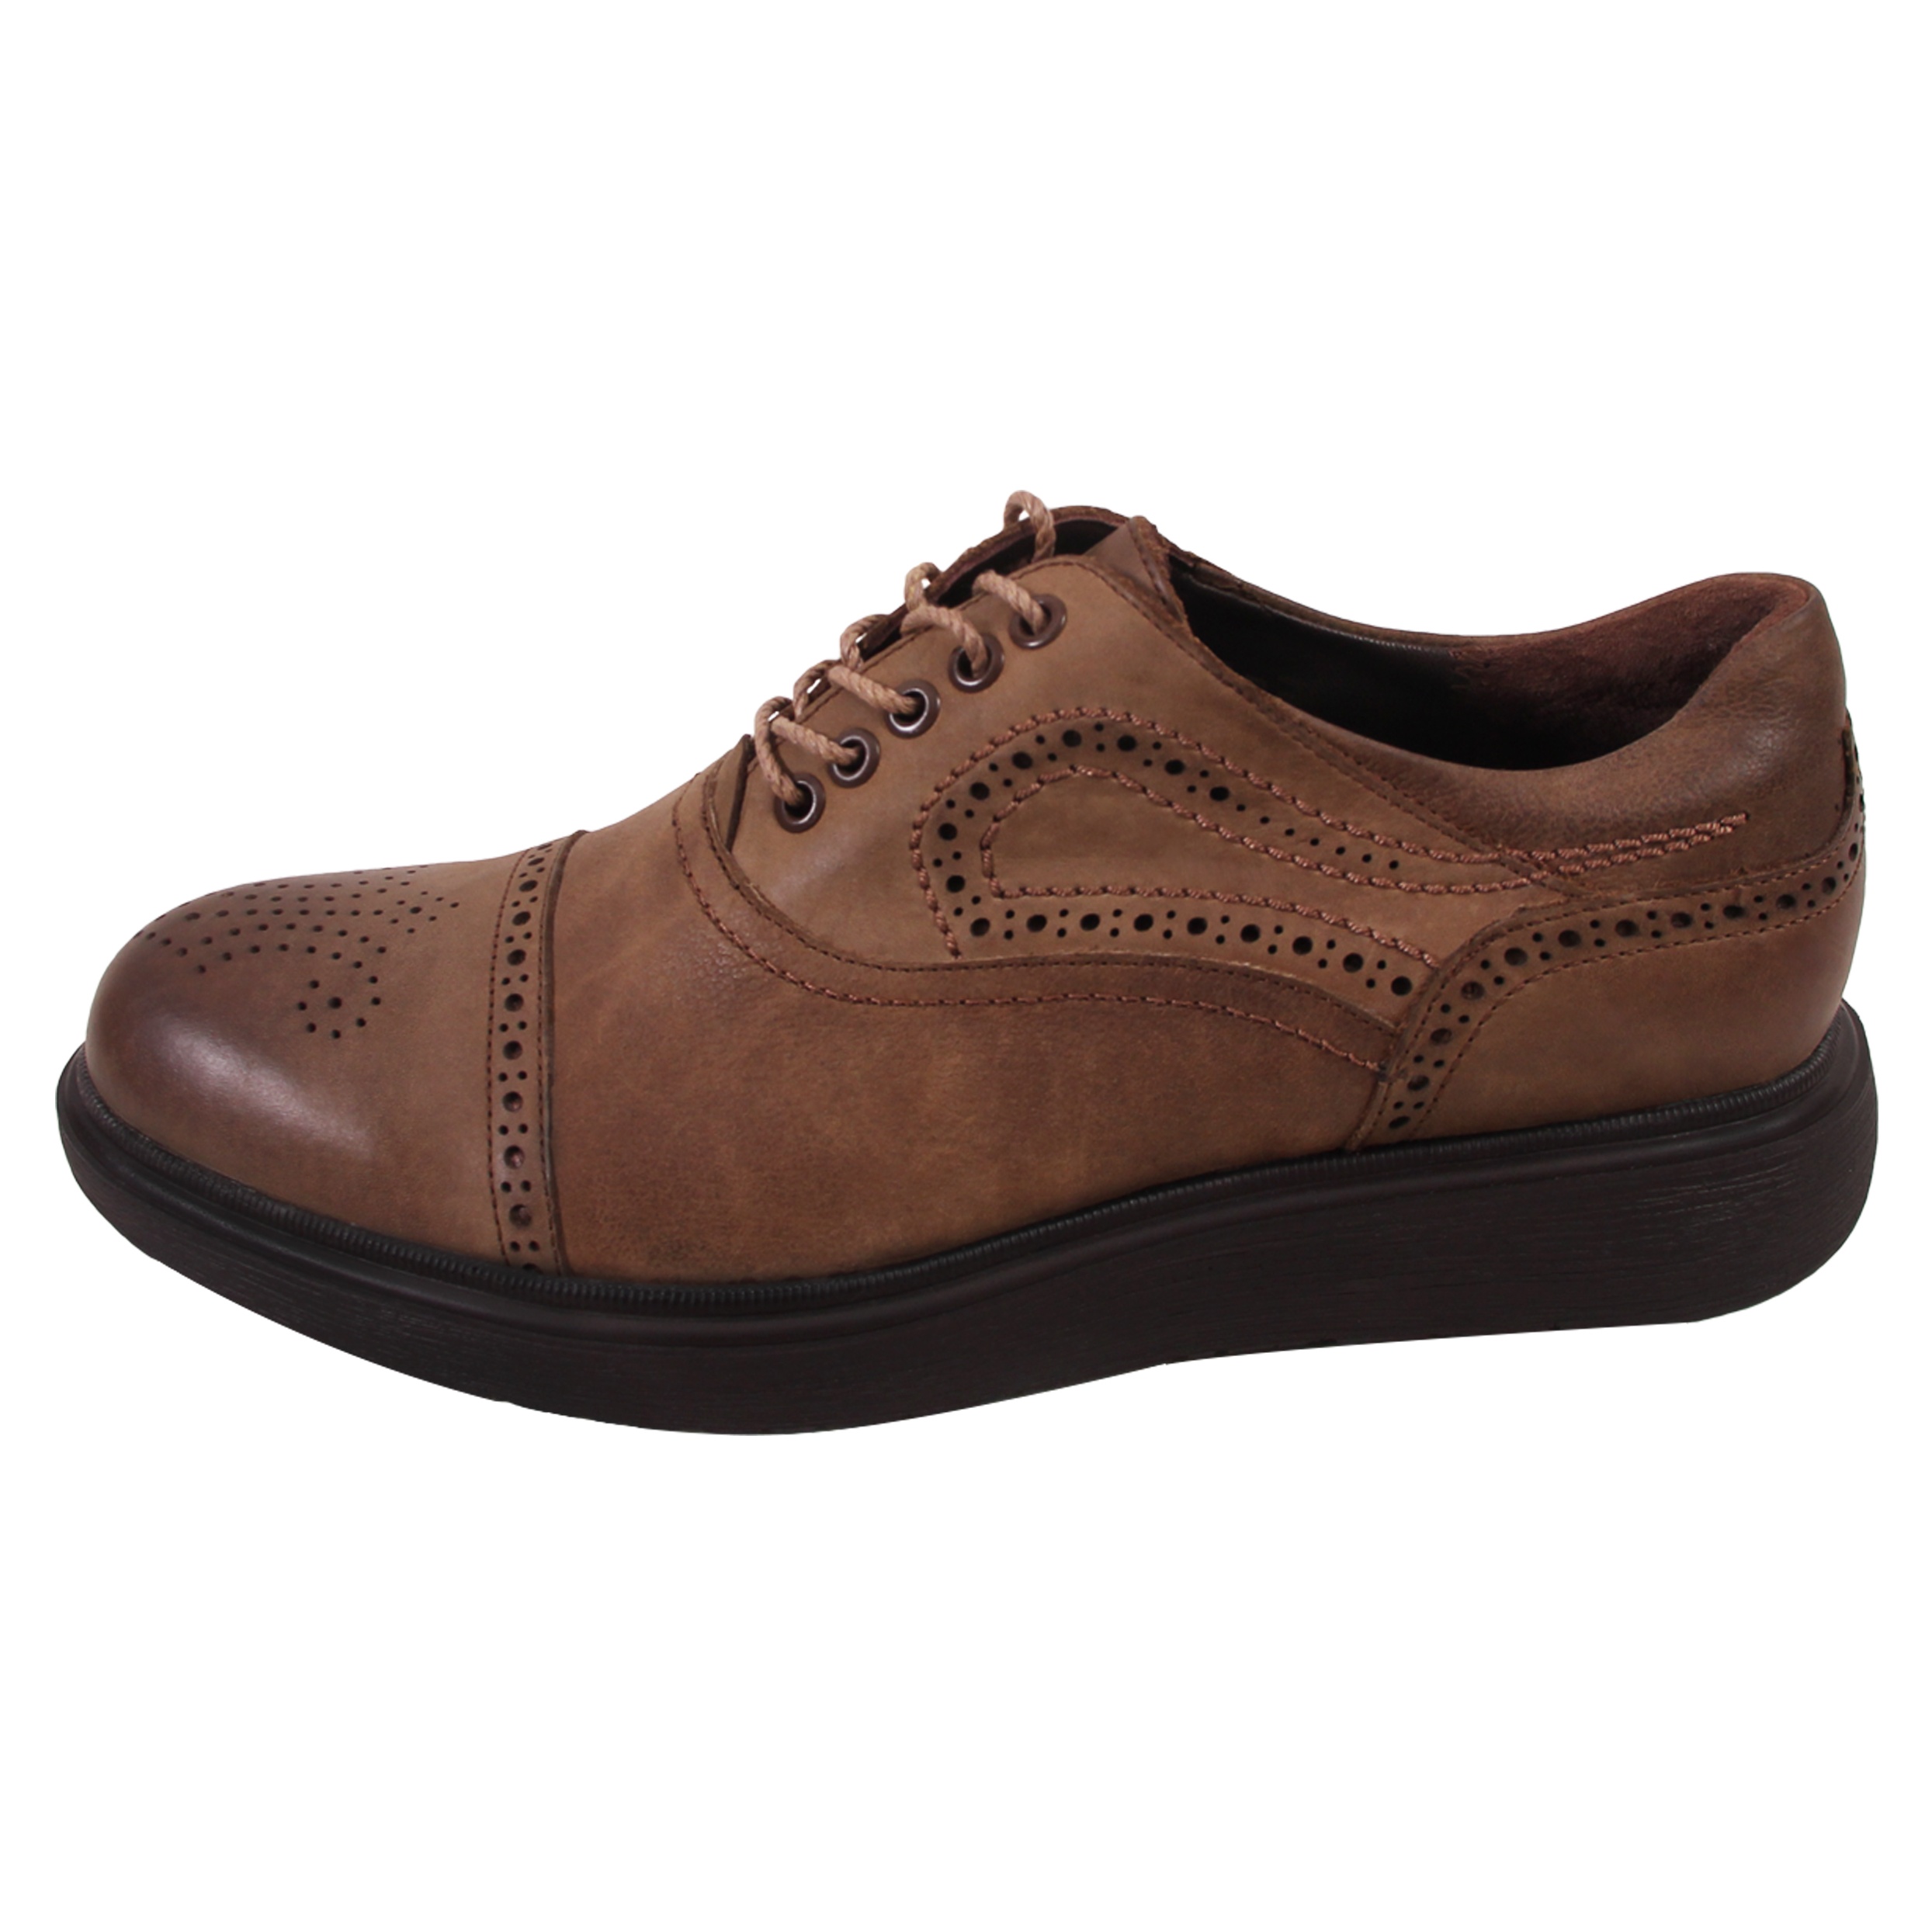 SHAHRECHARM leather men's casual shoes , M8901-14  Model